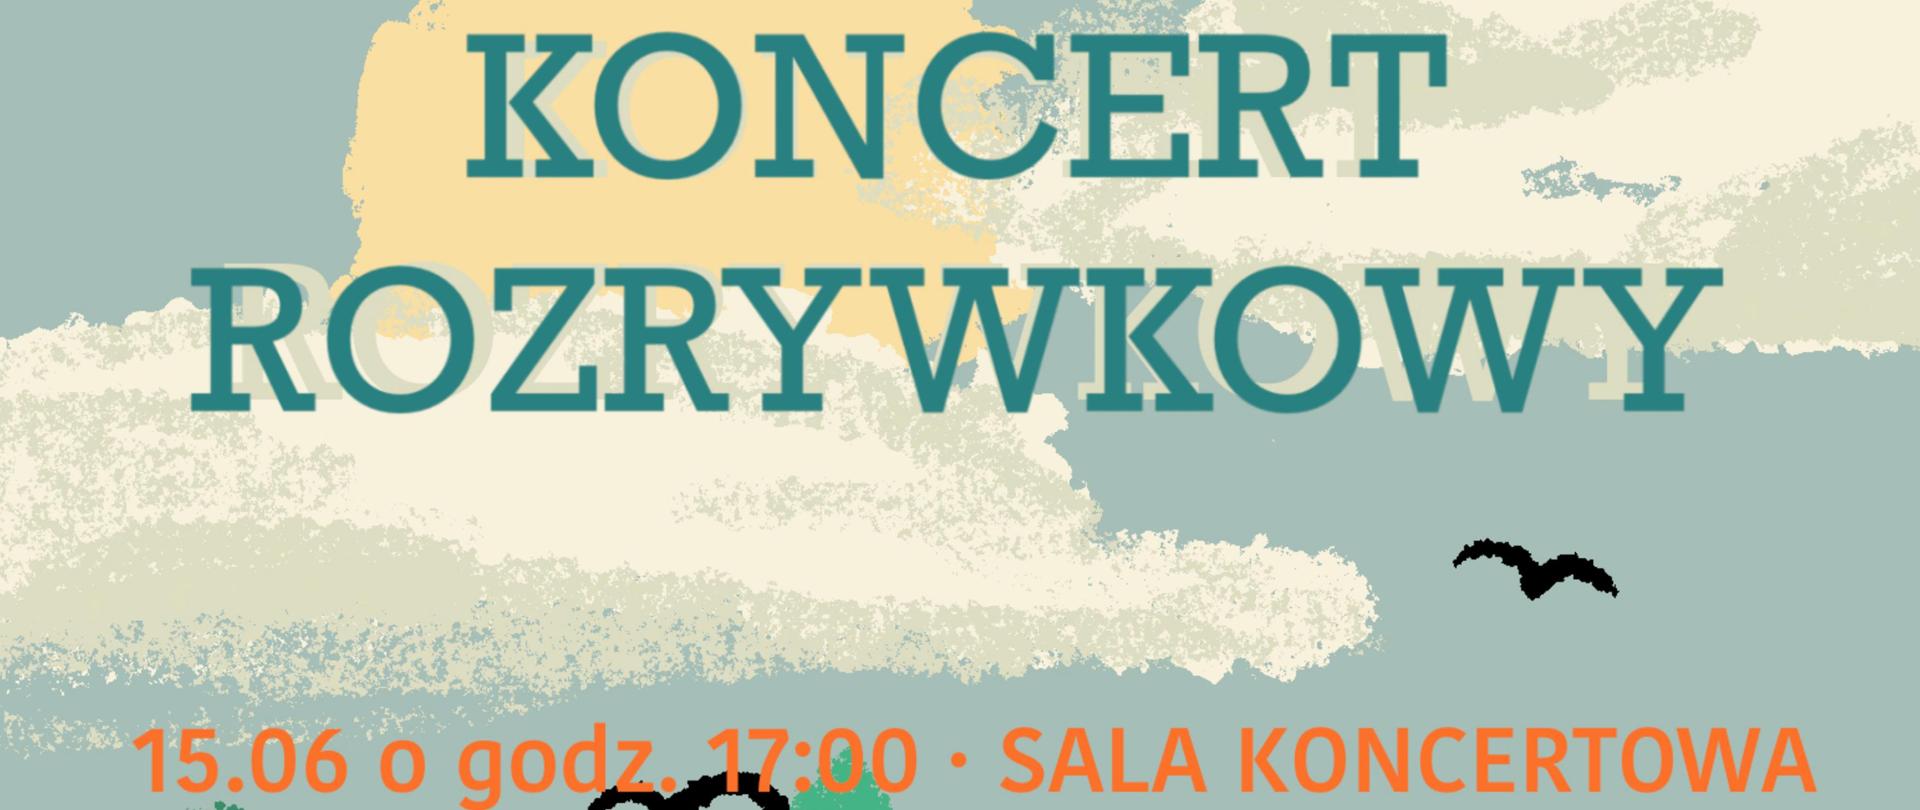 afisz w niebiesko-beżowej tonacji, zawiera grafikę perkusji oraz logo szkoły i napis" Koncert rozrywkowy 15.06 godz. 17:00-sala koncertowa"